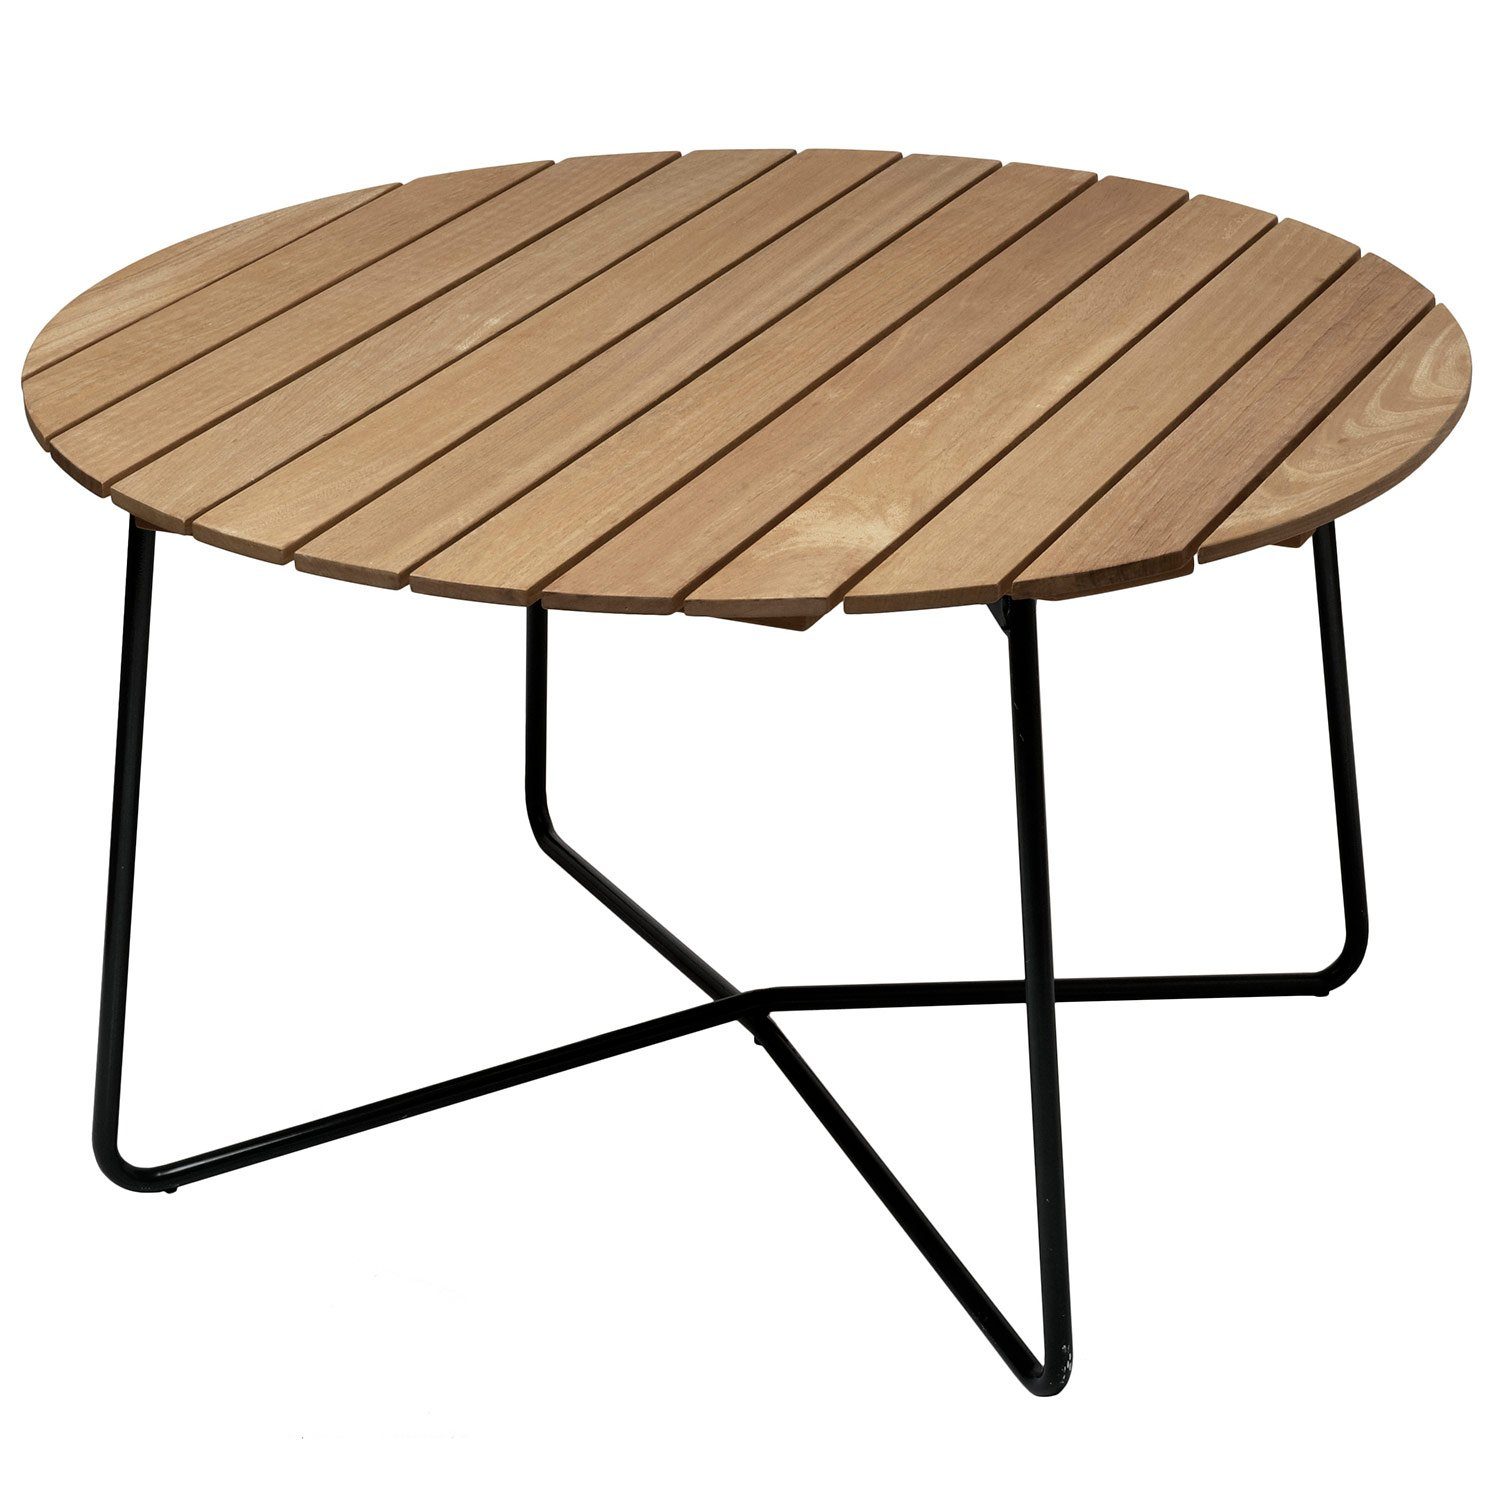 9A bord oljad ek / mörkgrönt stativ Ø120 cm